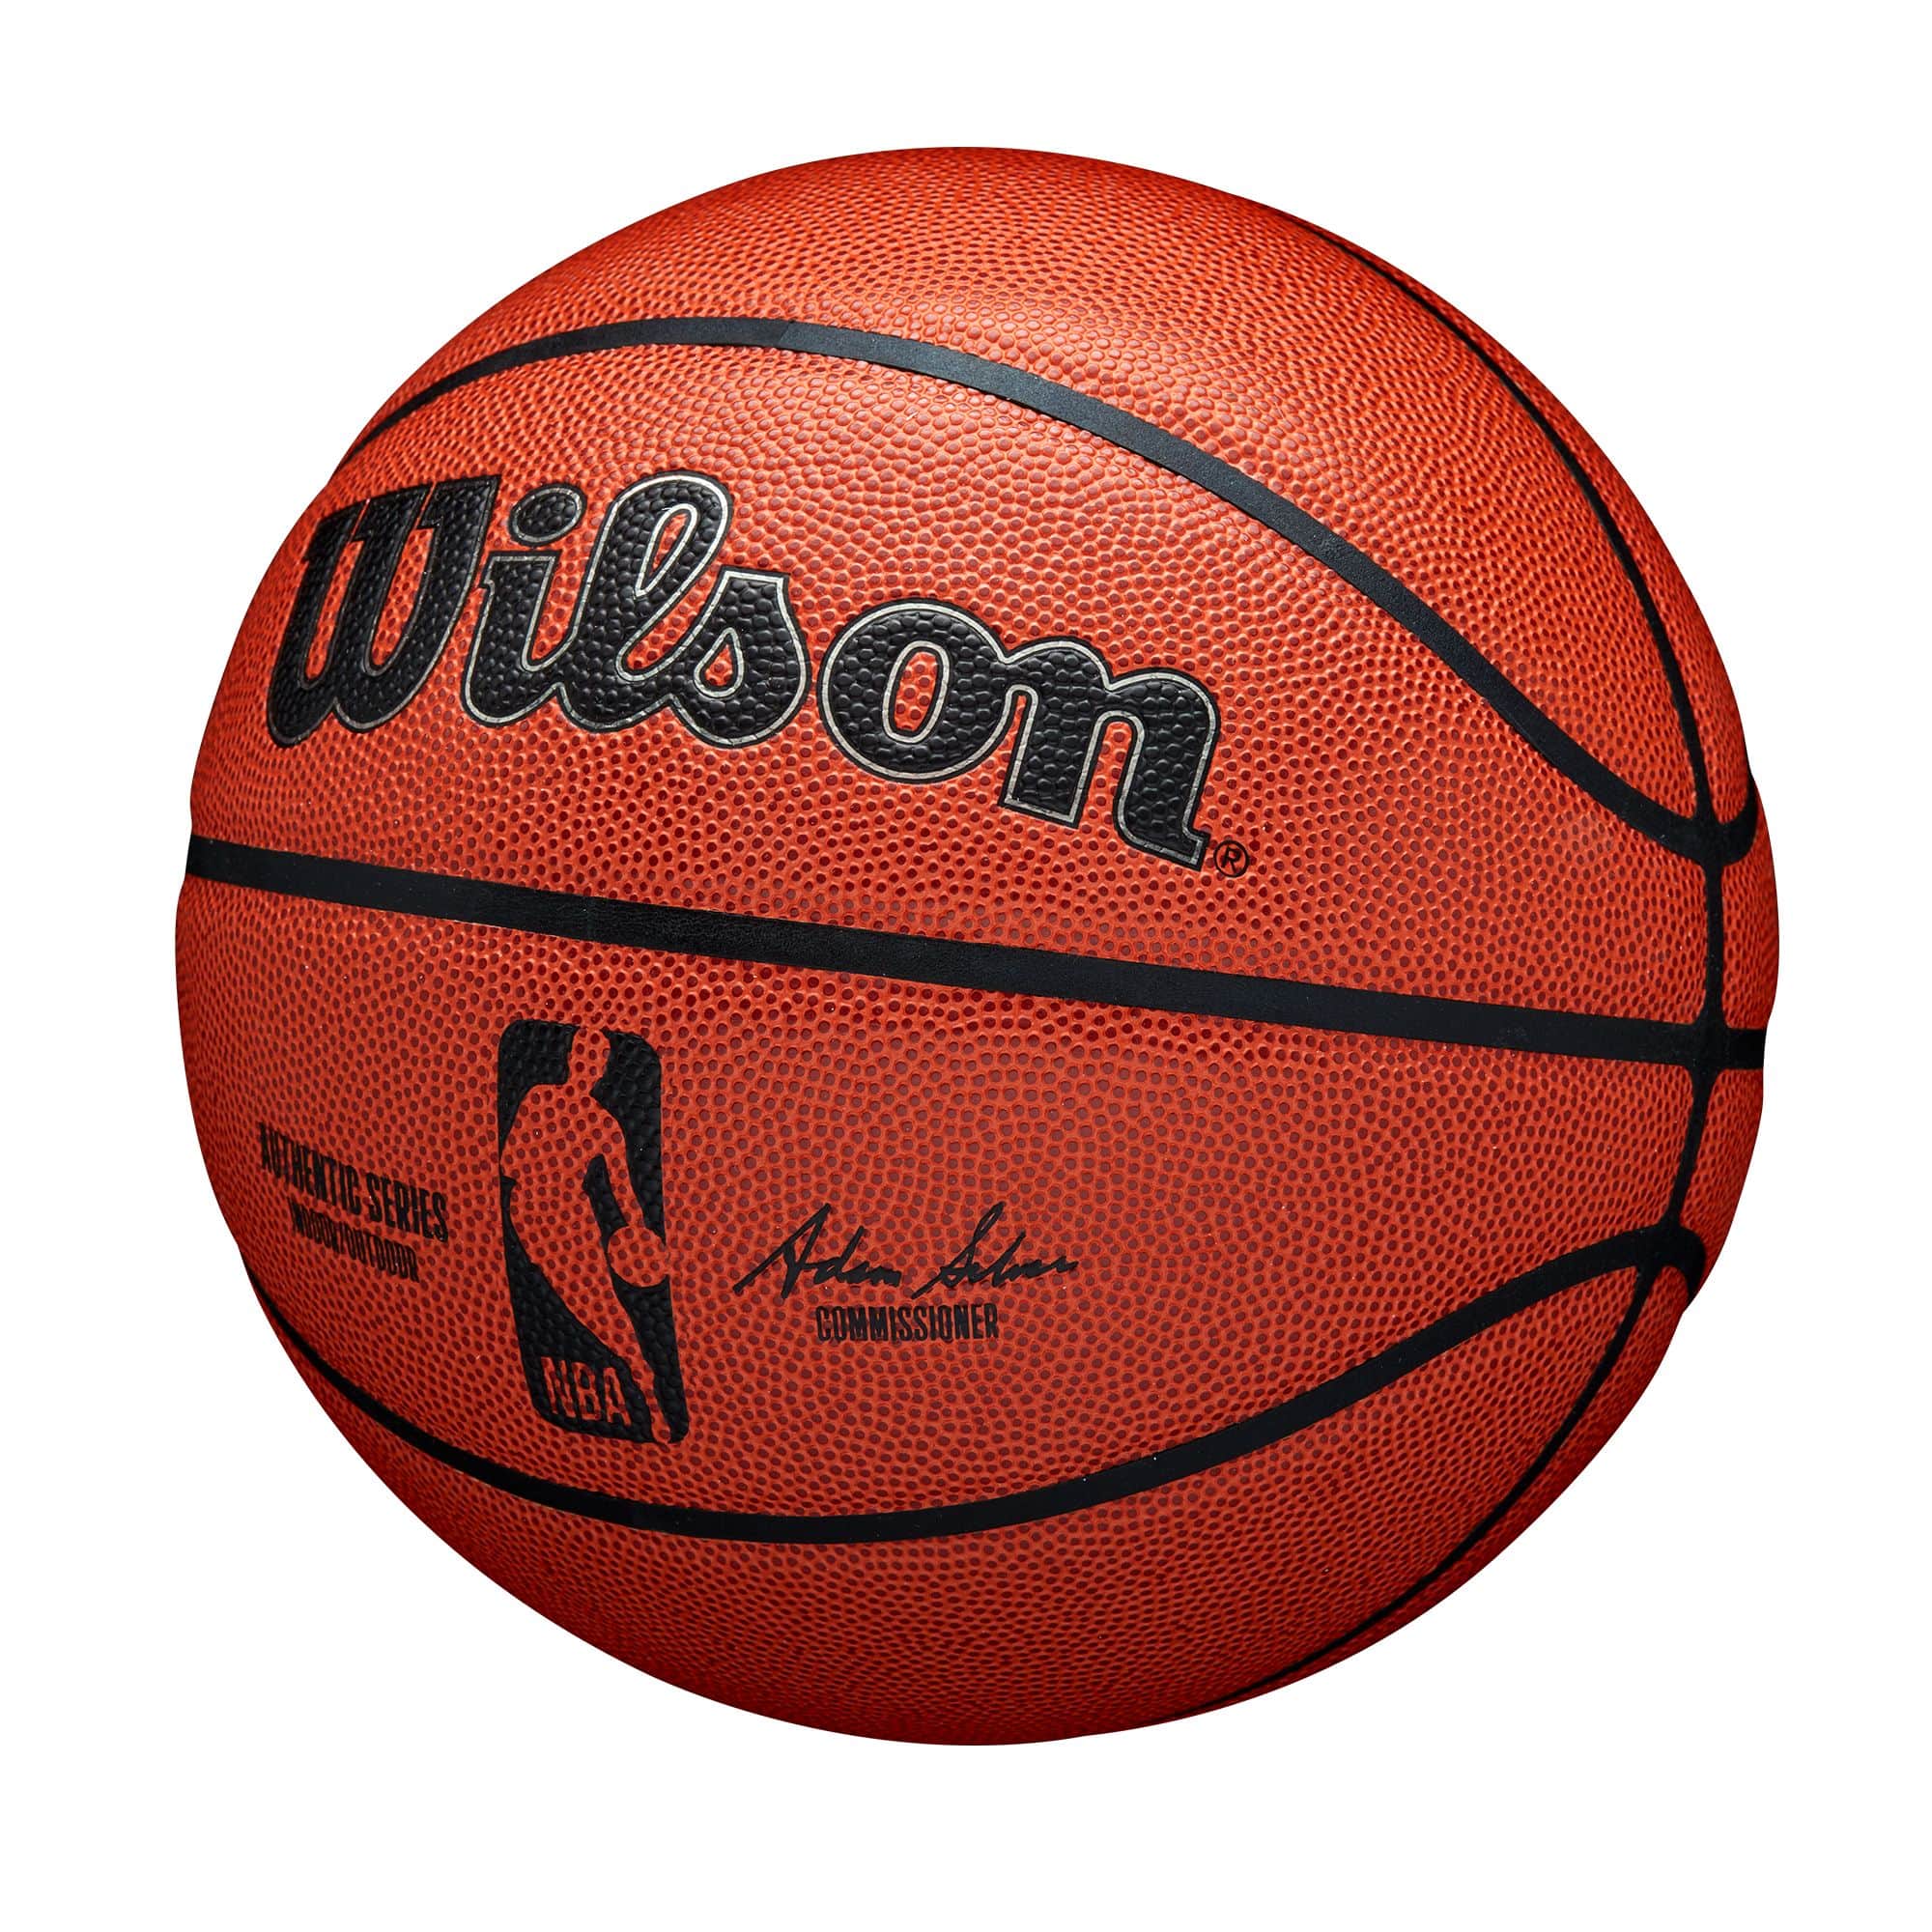 Sticker de Basketteur Joueur n°7 debout avec ballon de basket 